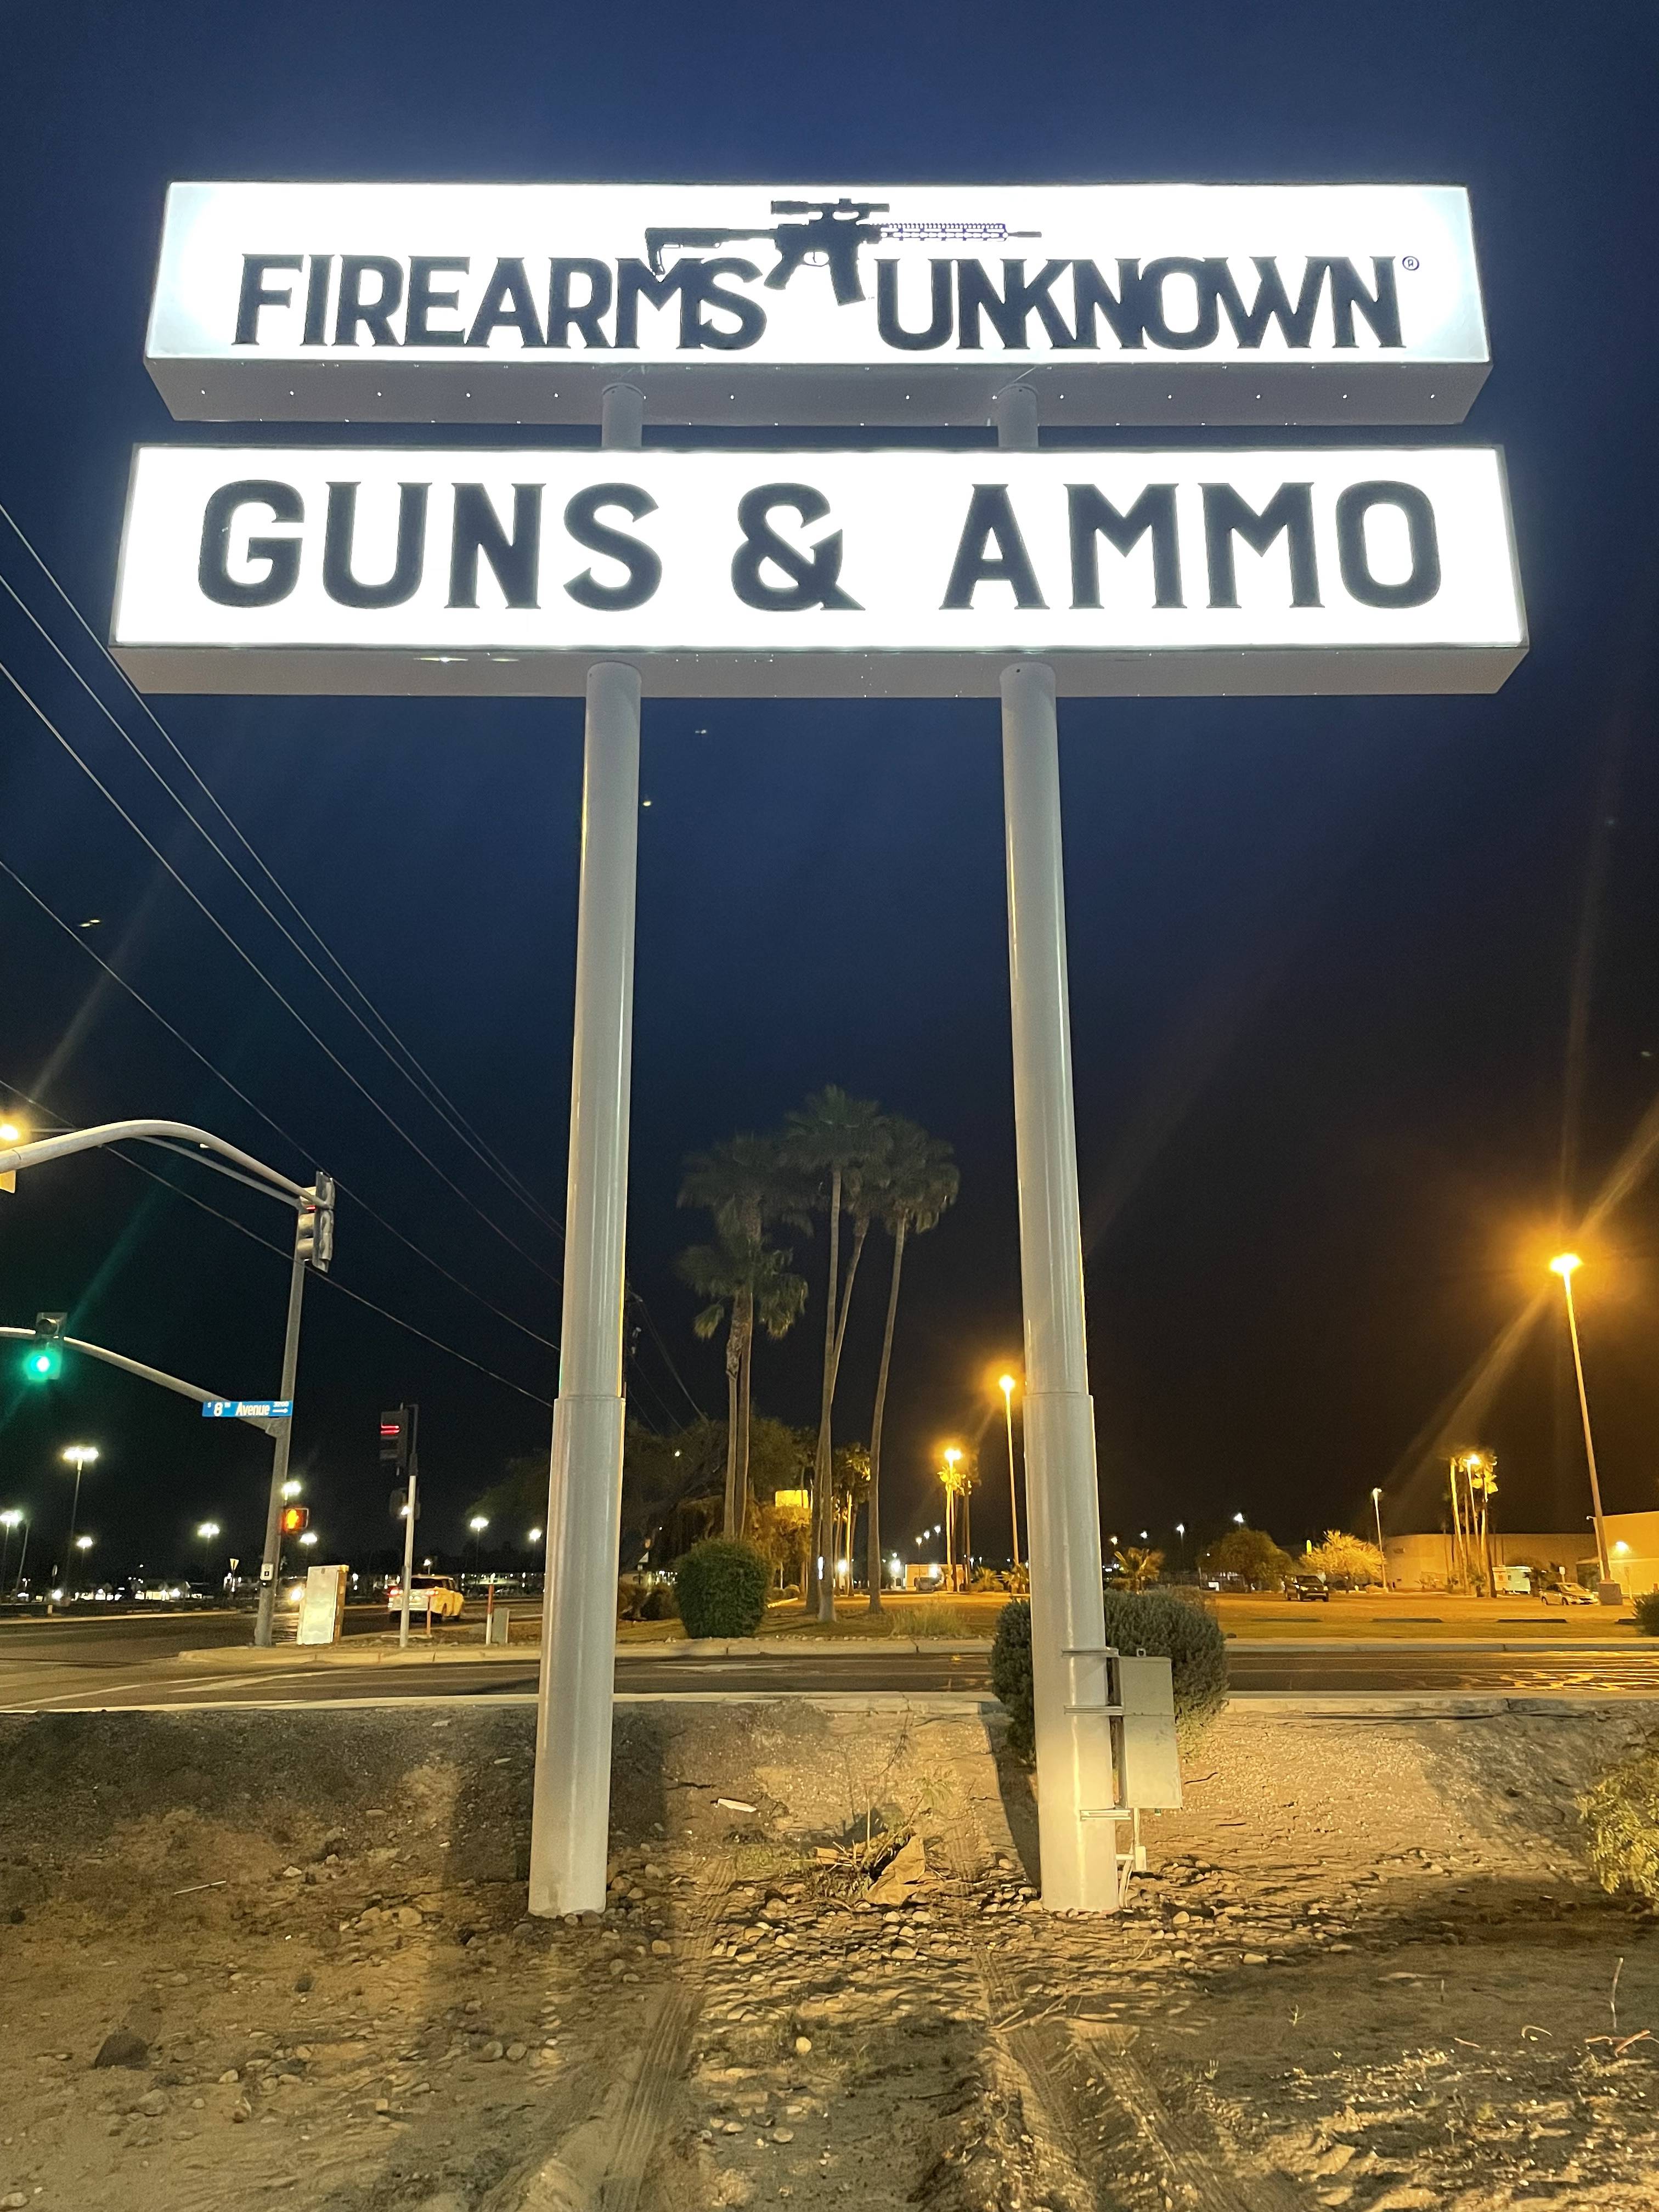 Firearms Unknown